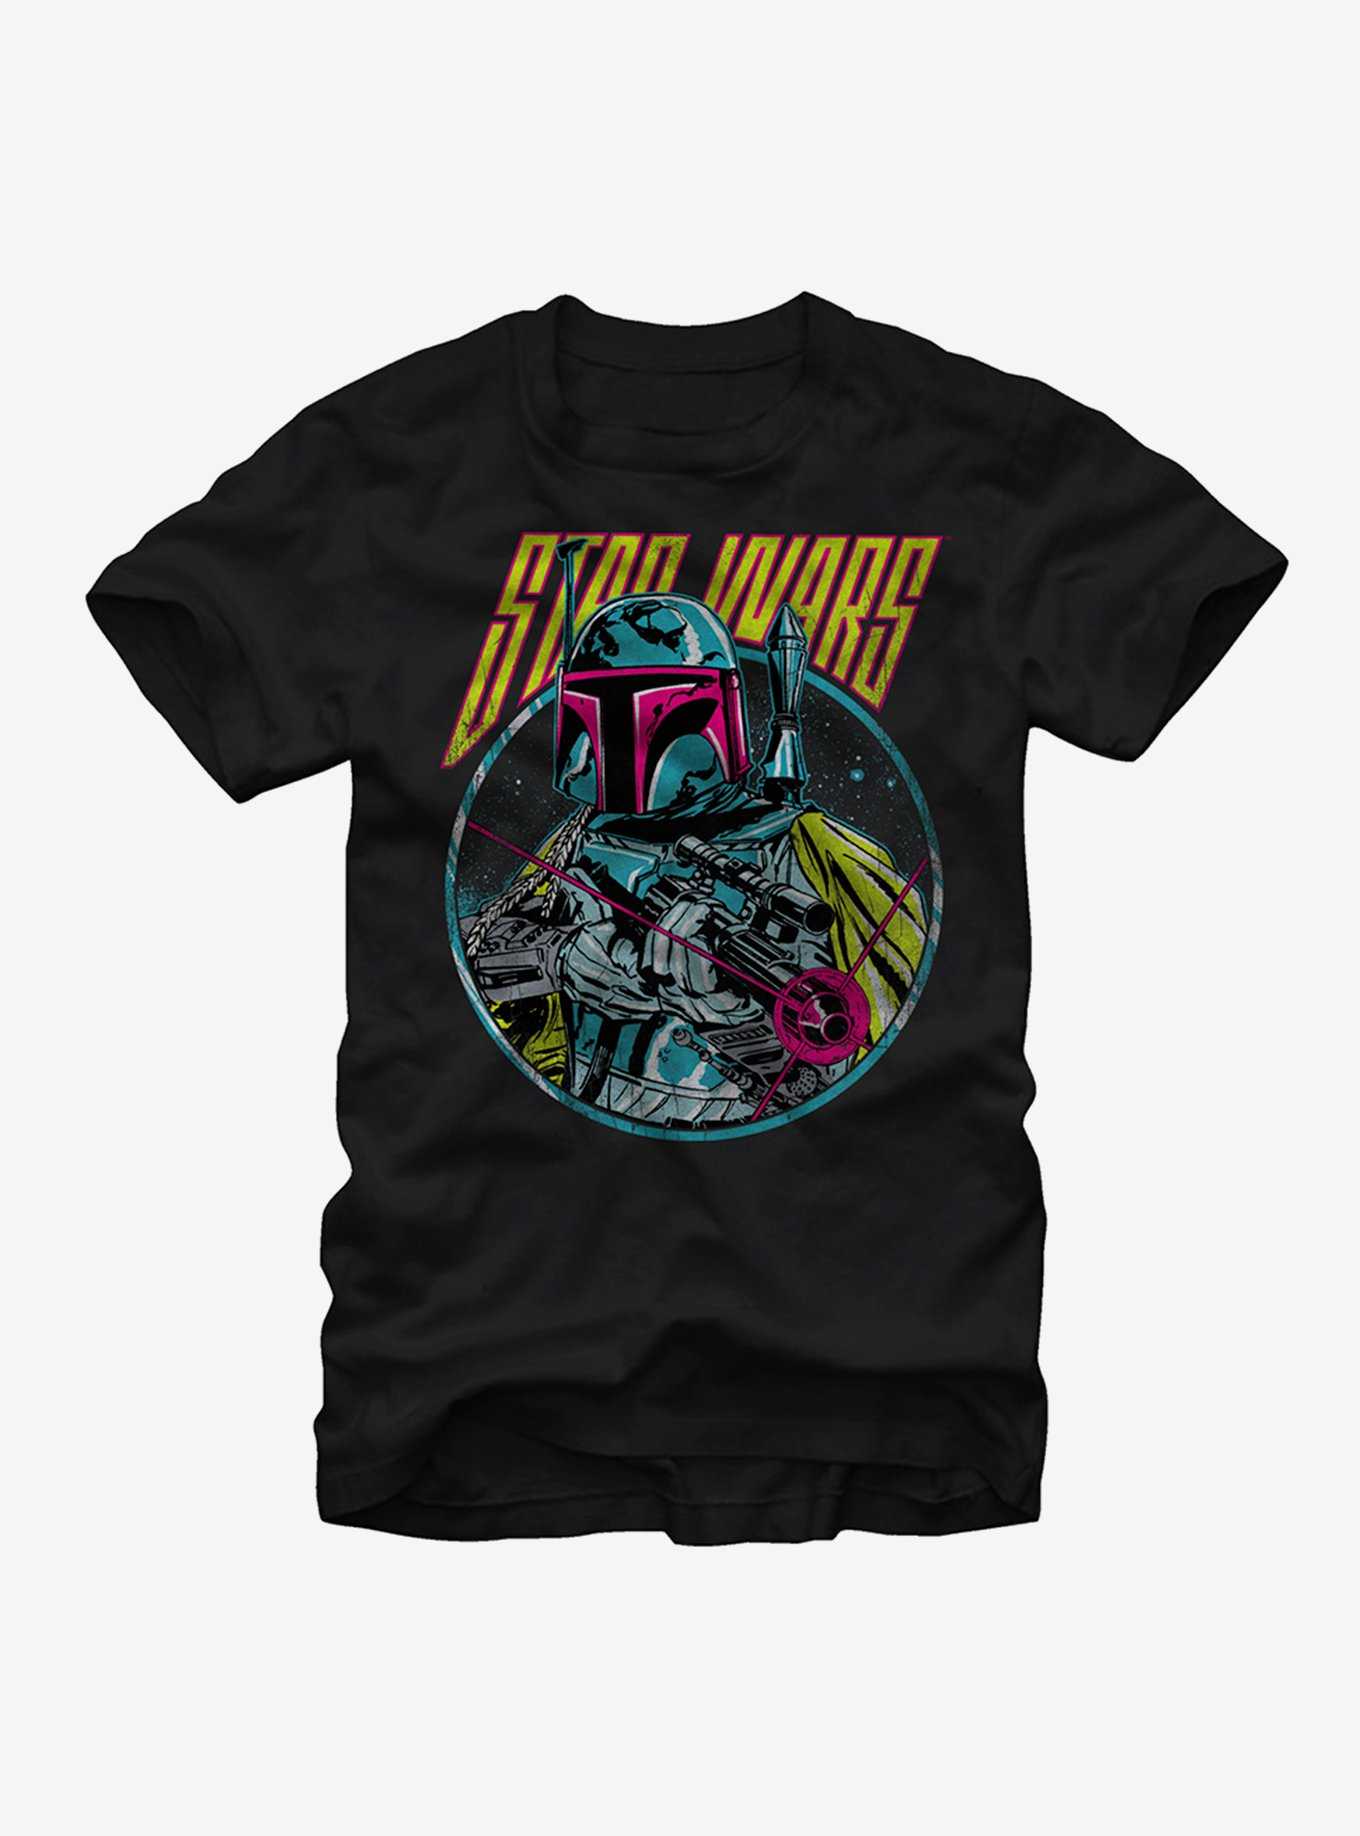 Star Wars Boba Fett Blaster T-Shirt, , hi-res